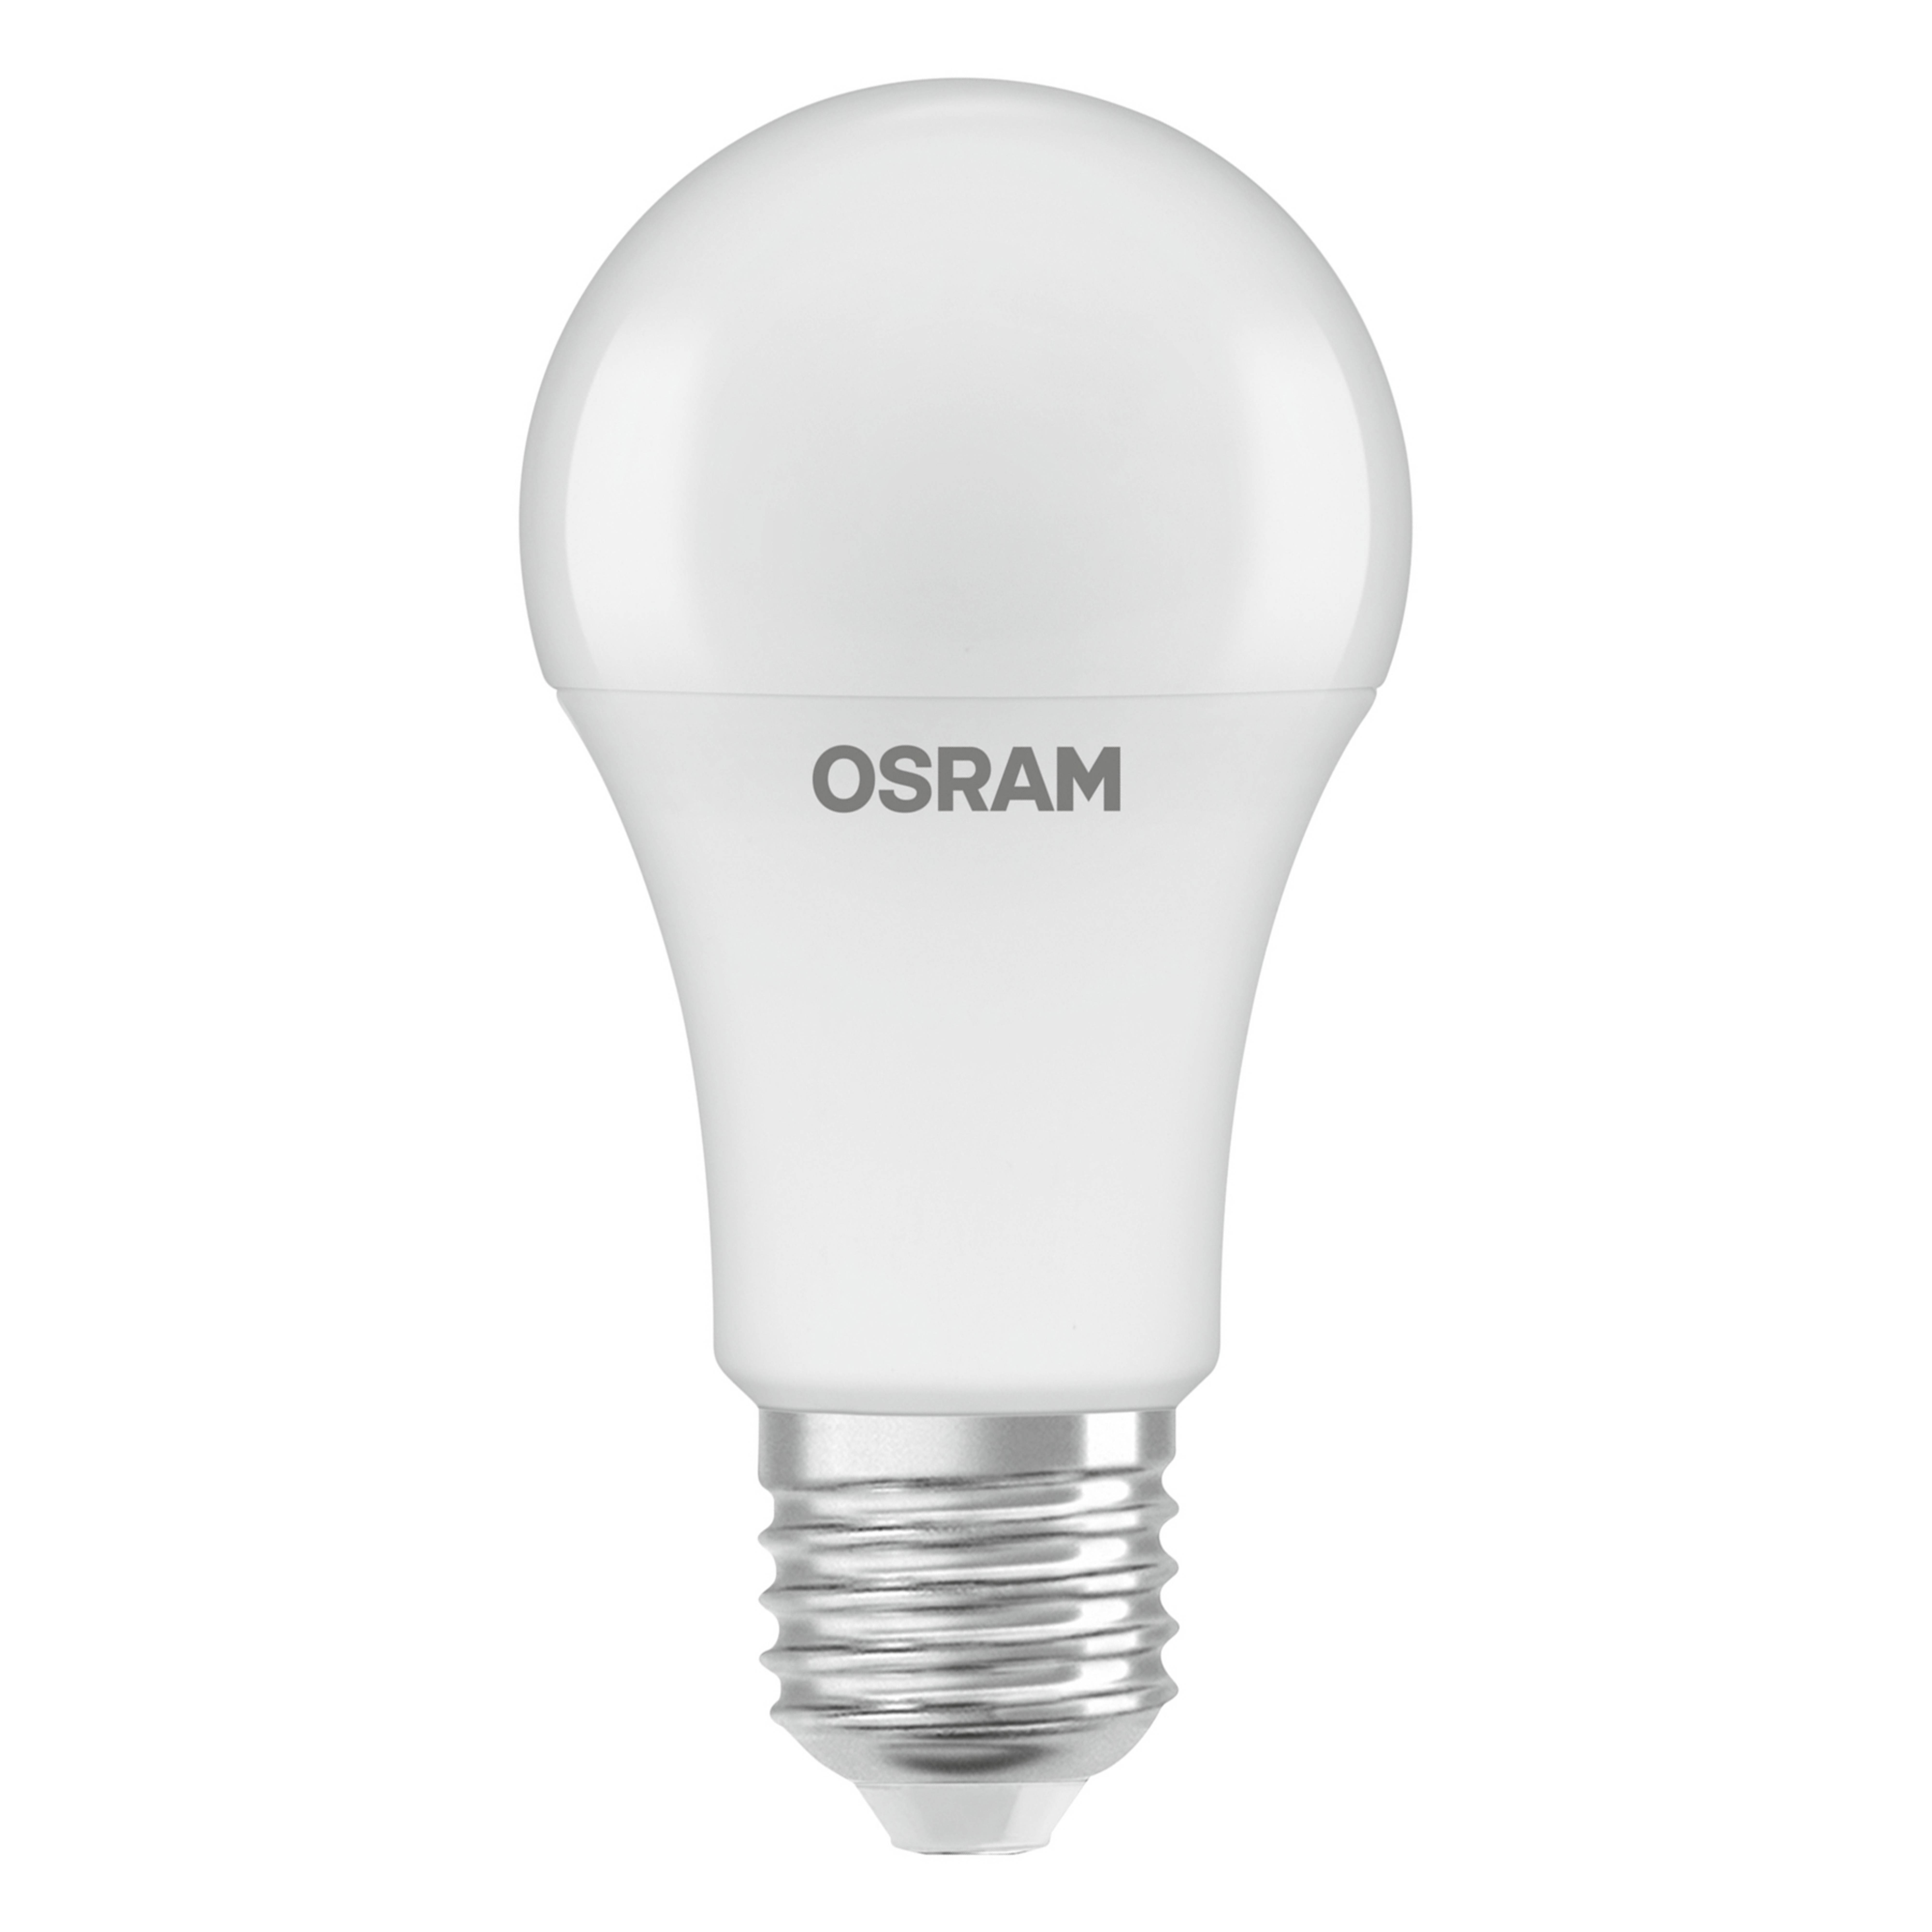 Lampada OSRAM E27 8.8W 827 com sensor de luz do dia